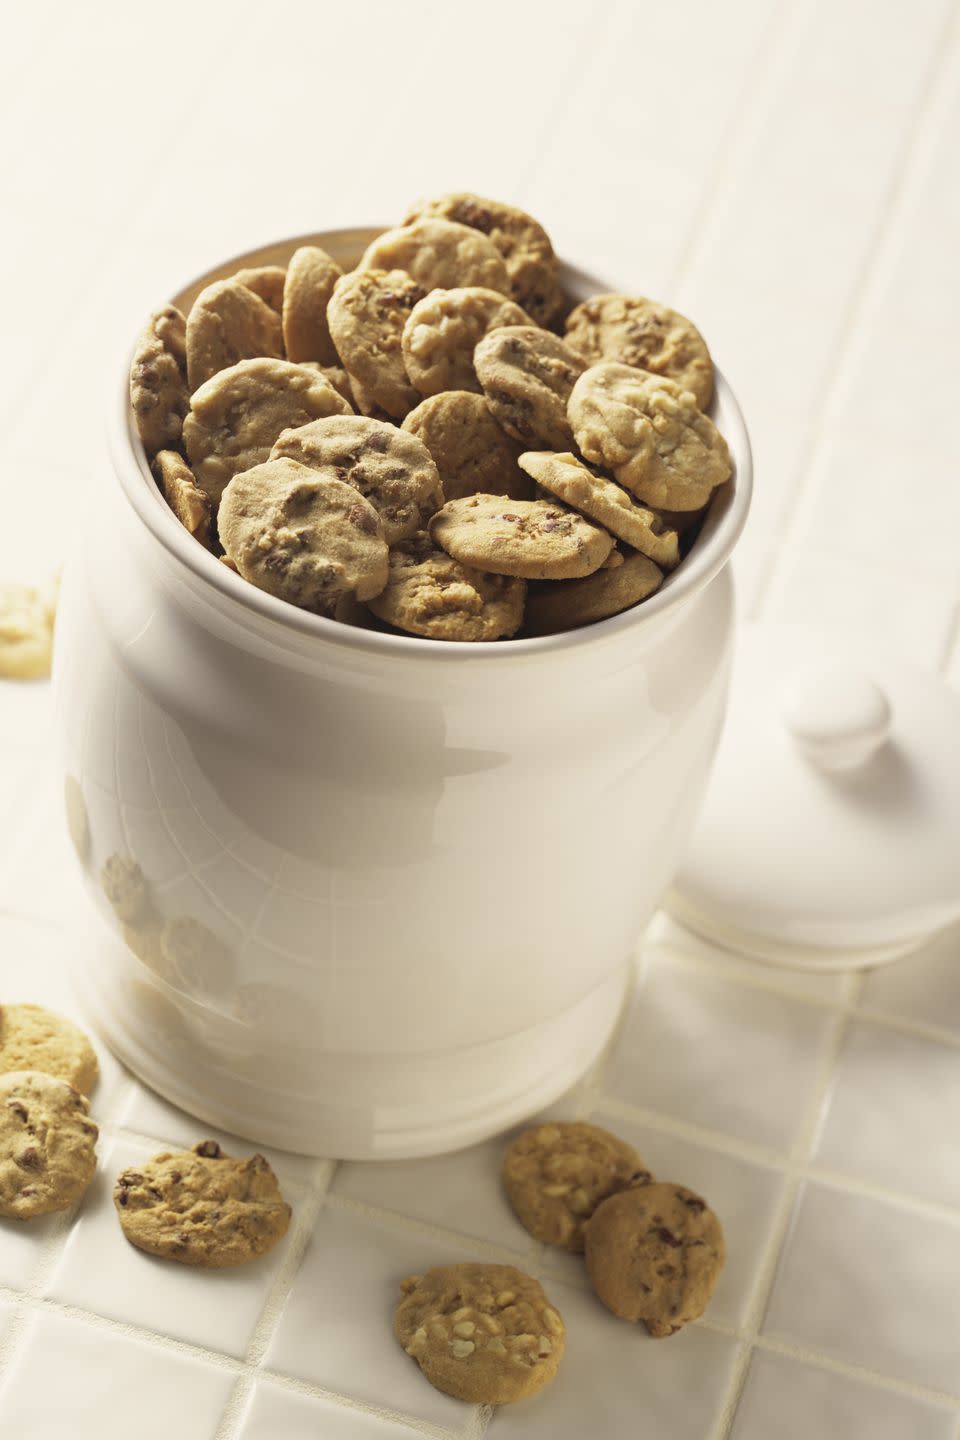 Cookie Jars